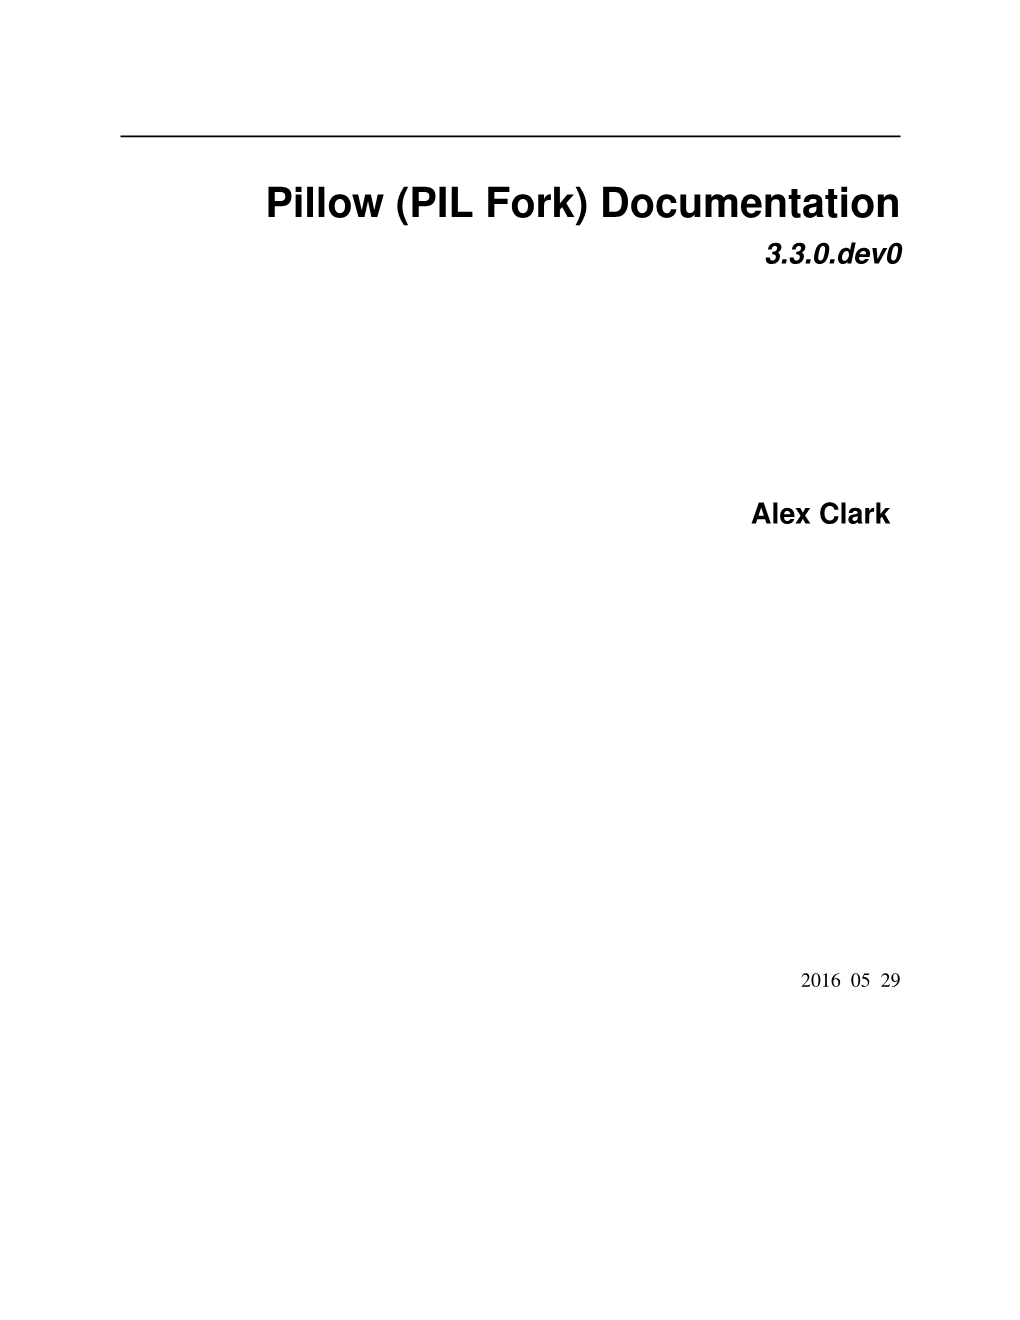 Pillow (PIL Fork) Documentation 3.3.0.Dev0